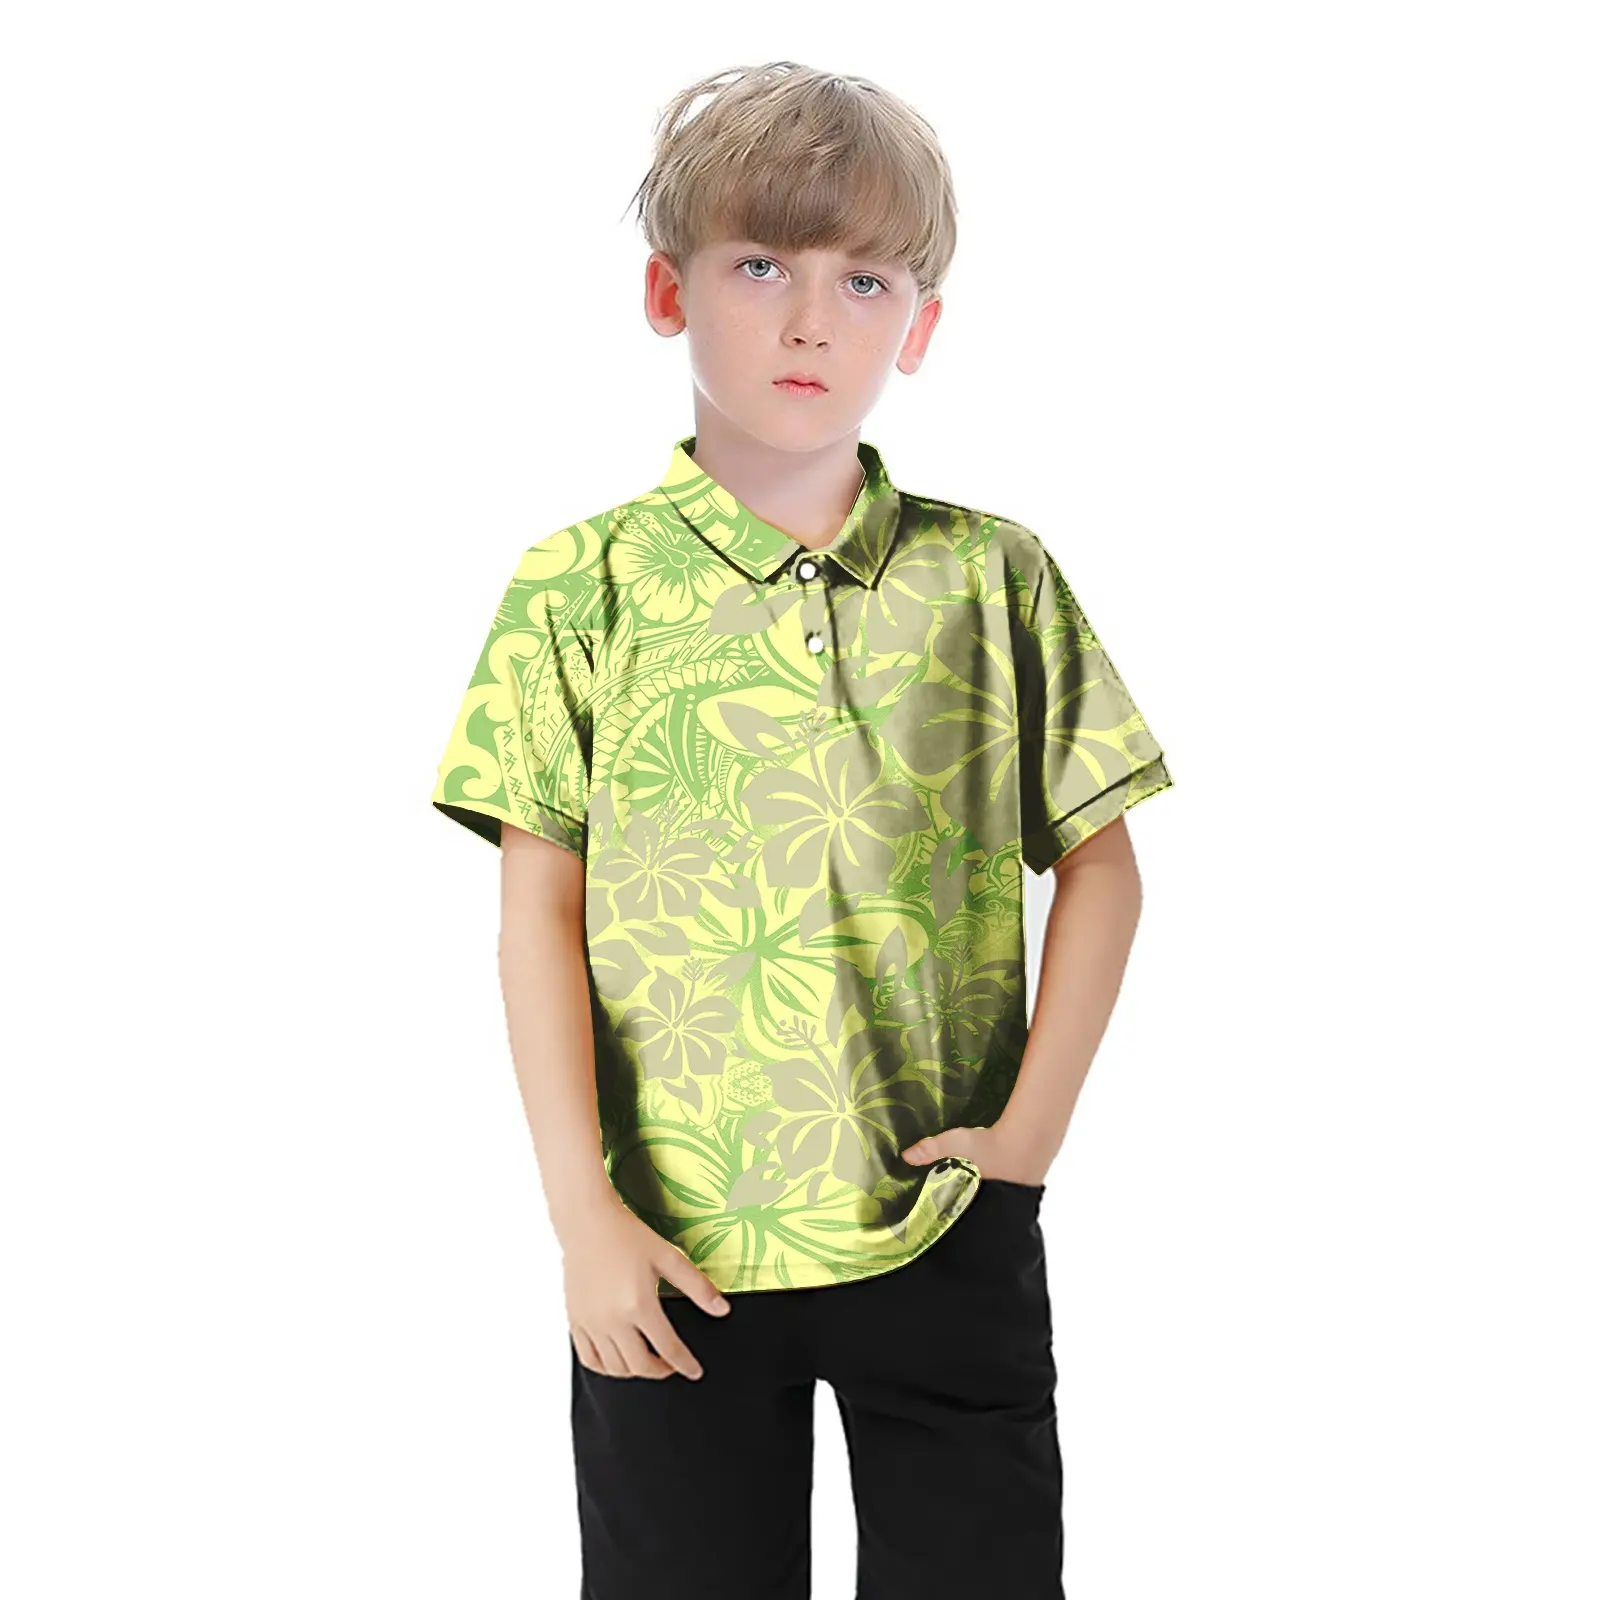 1MOQ yaz giyim polinezya kabile kısa kollu Aloha T shirt erkek çocuklar için baskı Polo T shirt giyim